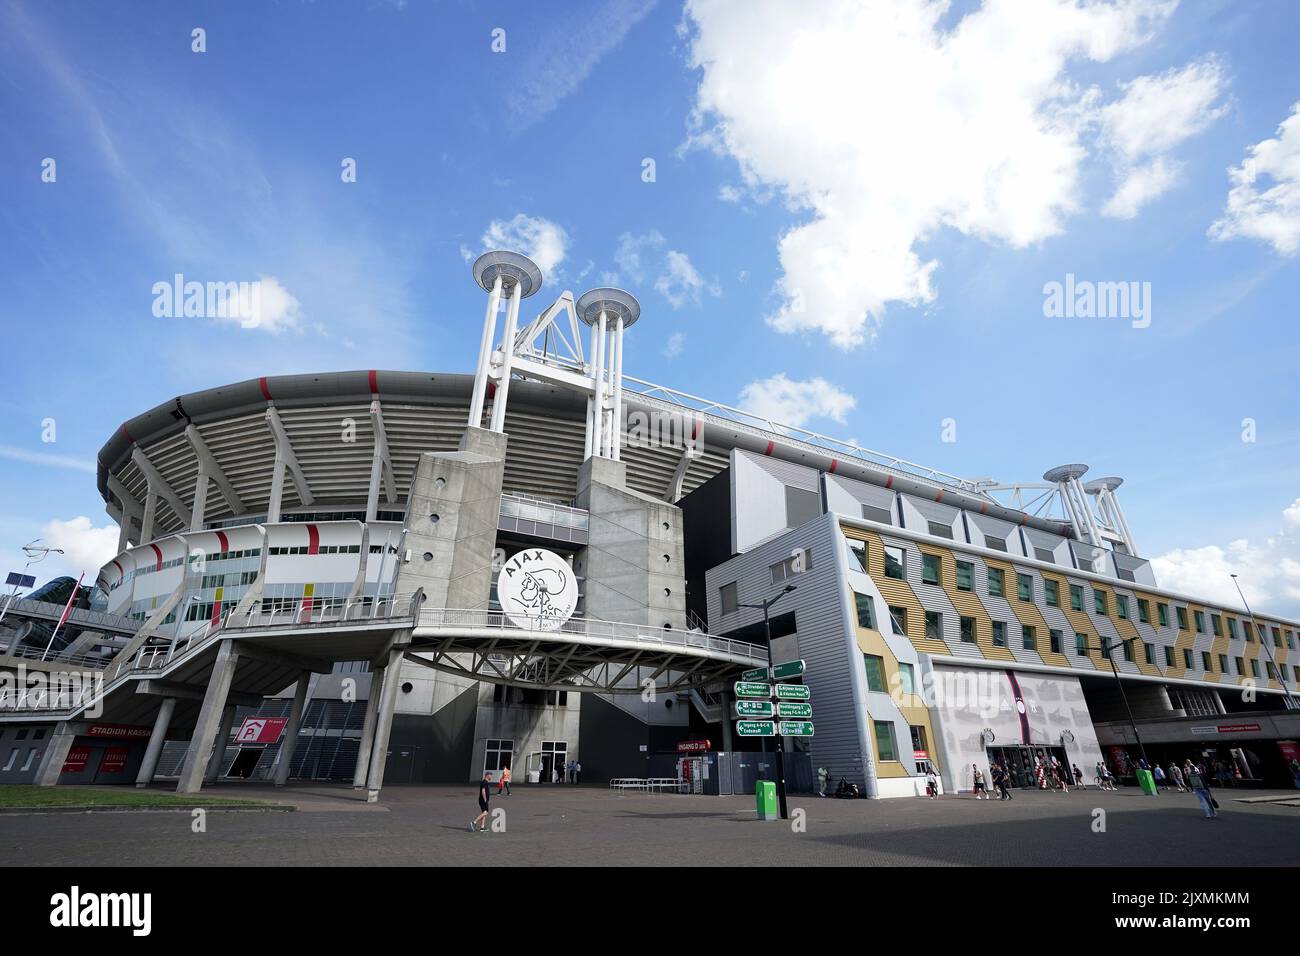 Ein Blick außerhalb des Bodens vor dem Spiel der UEFA Champions League Gruppe F in der Johan Cruyff Arena in Amsterdam, Niederlande. Bilddatum: Mittwoch, 7. September 2022. Stockfoto